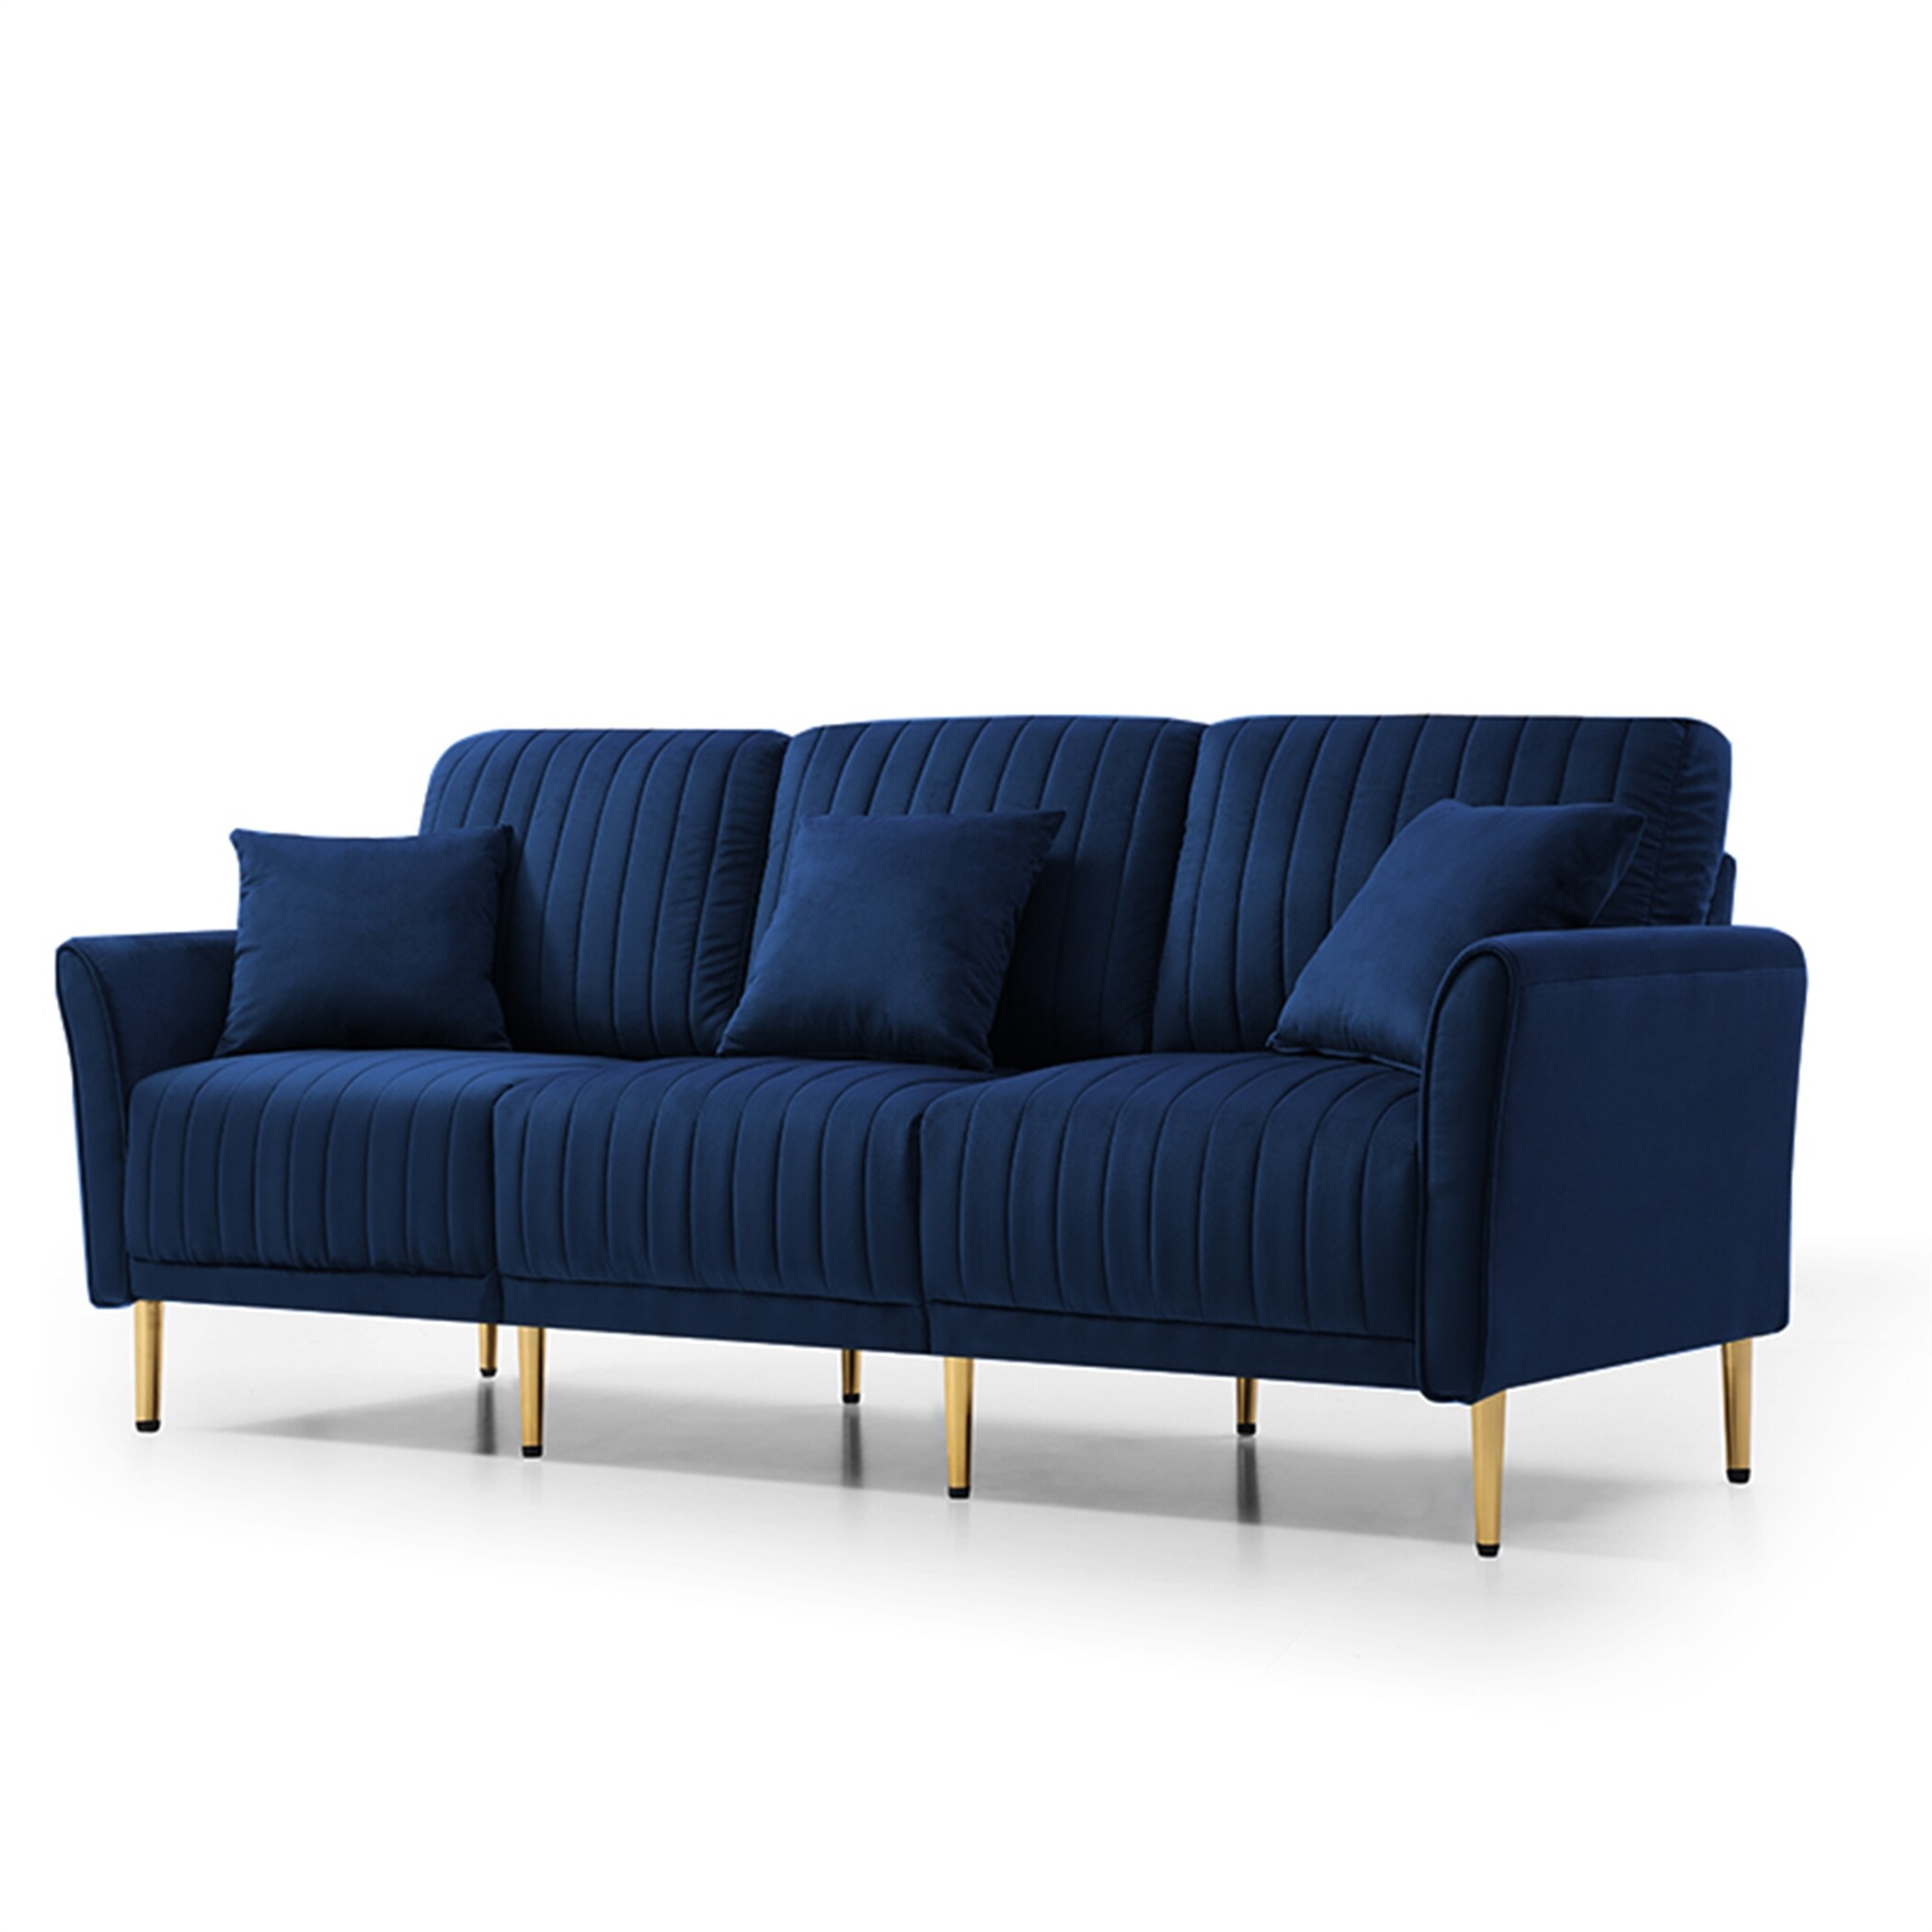 Modern Velvet Upholstered Sofa Couch 3 Seater Channel Tufted Back Sofa